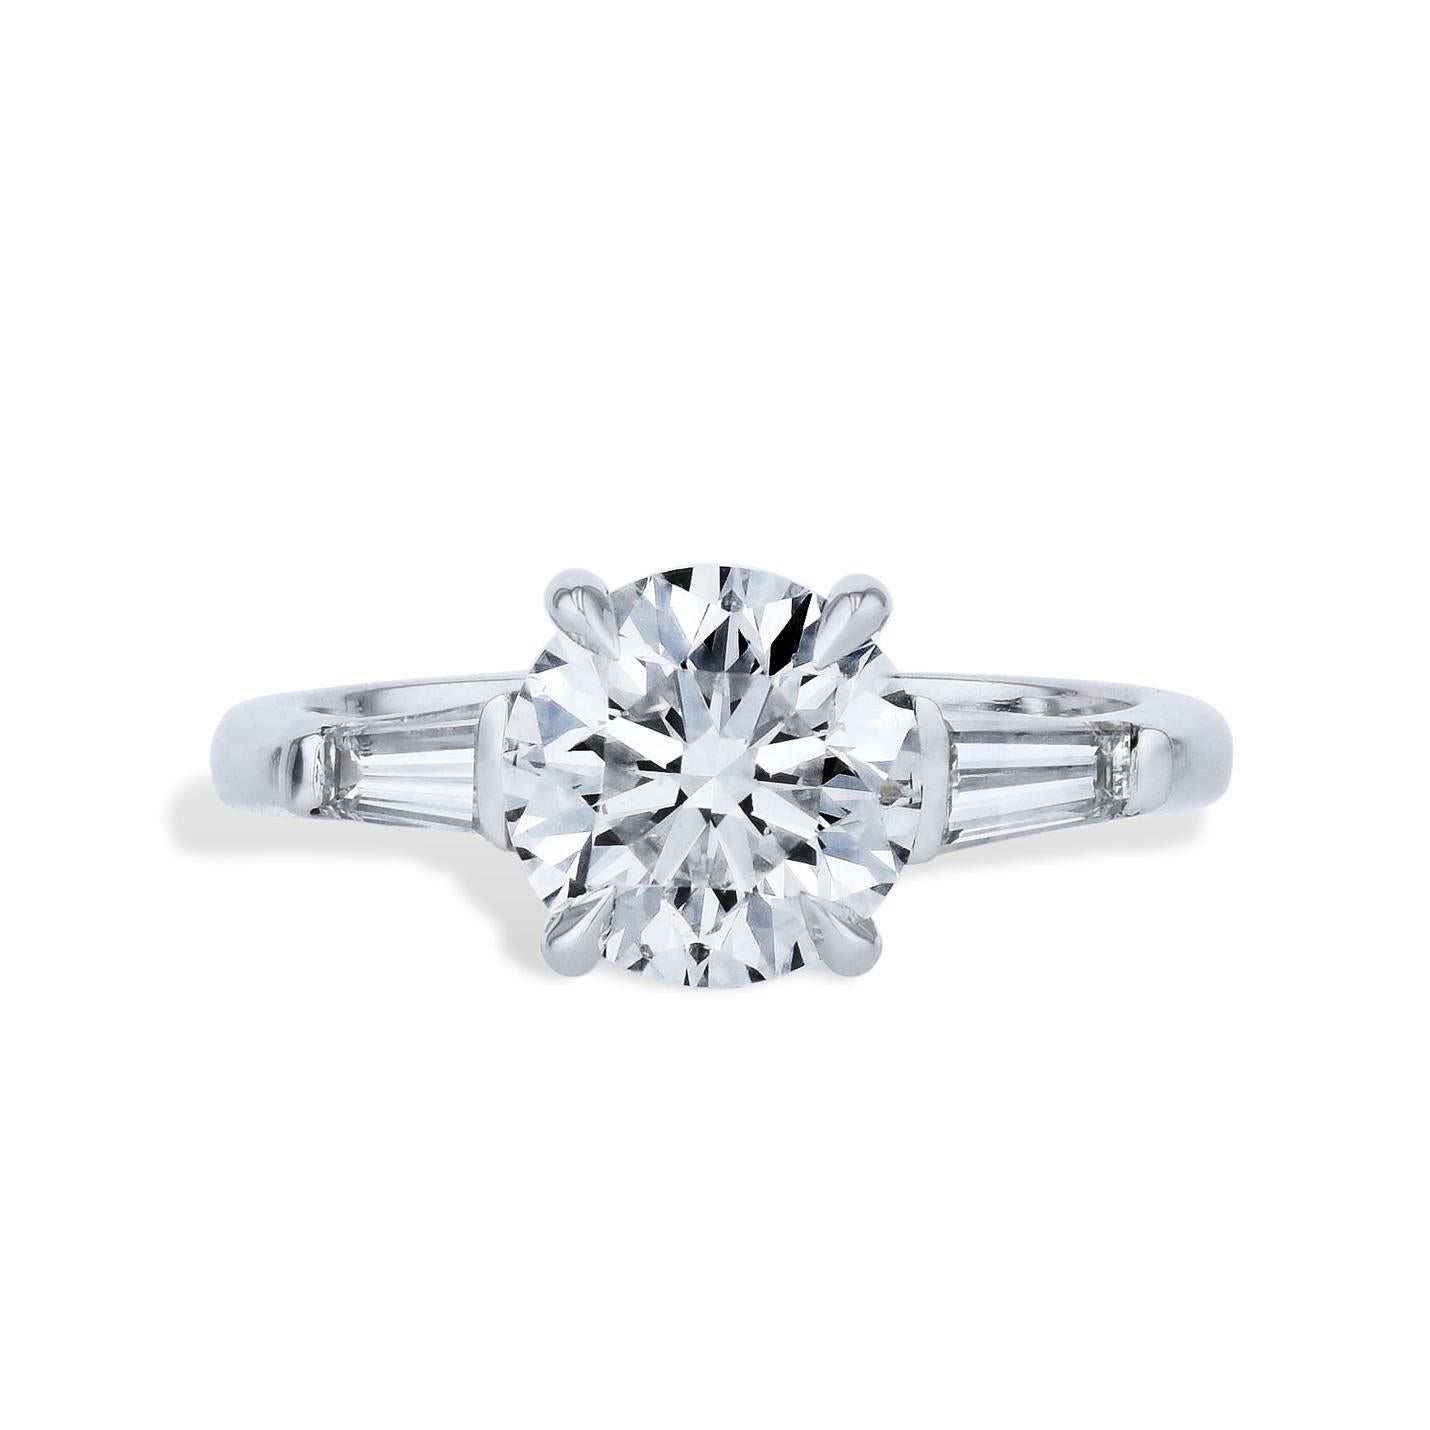 Brilliant Cut Handmade 2.03 Carat Diamond Platinum Engagement Ring